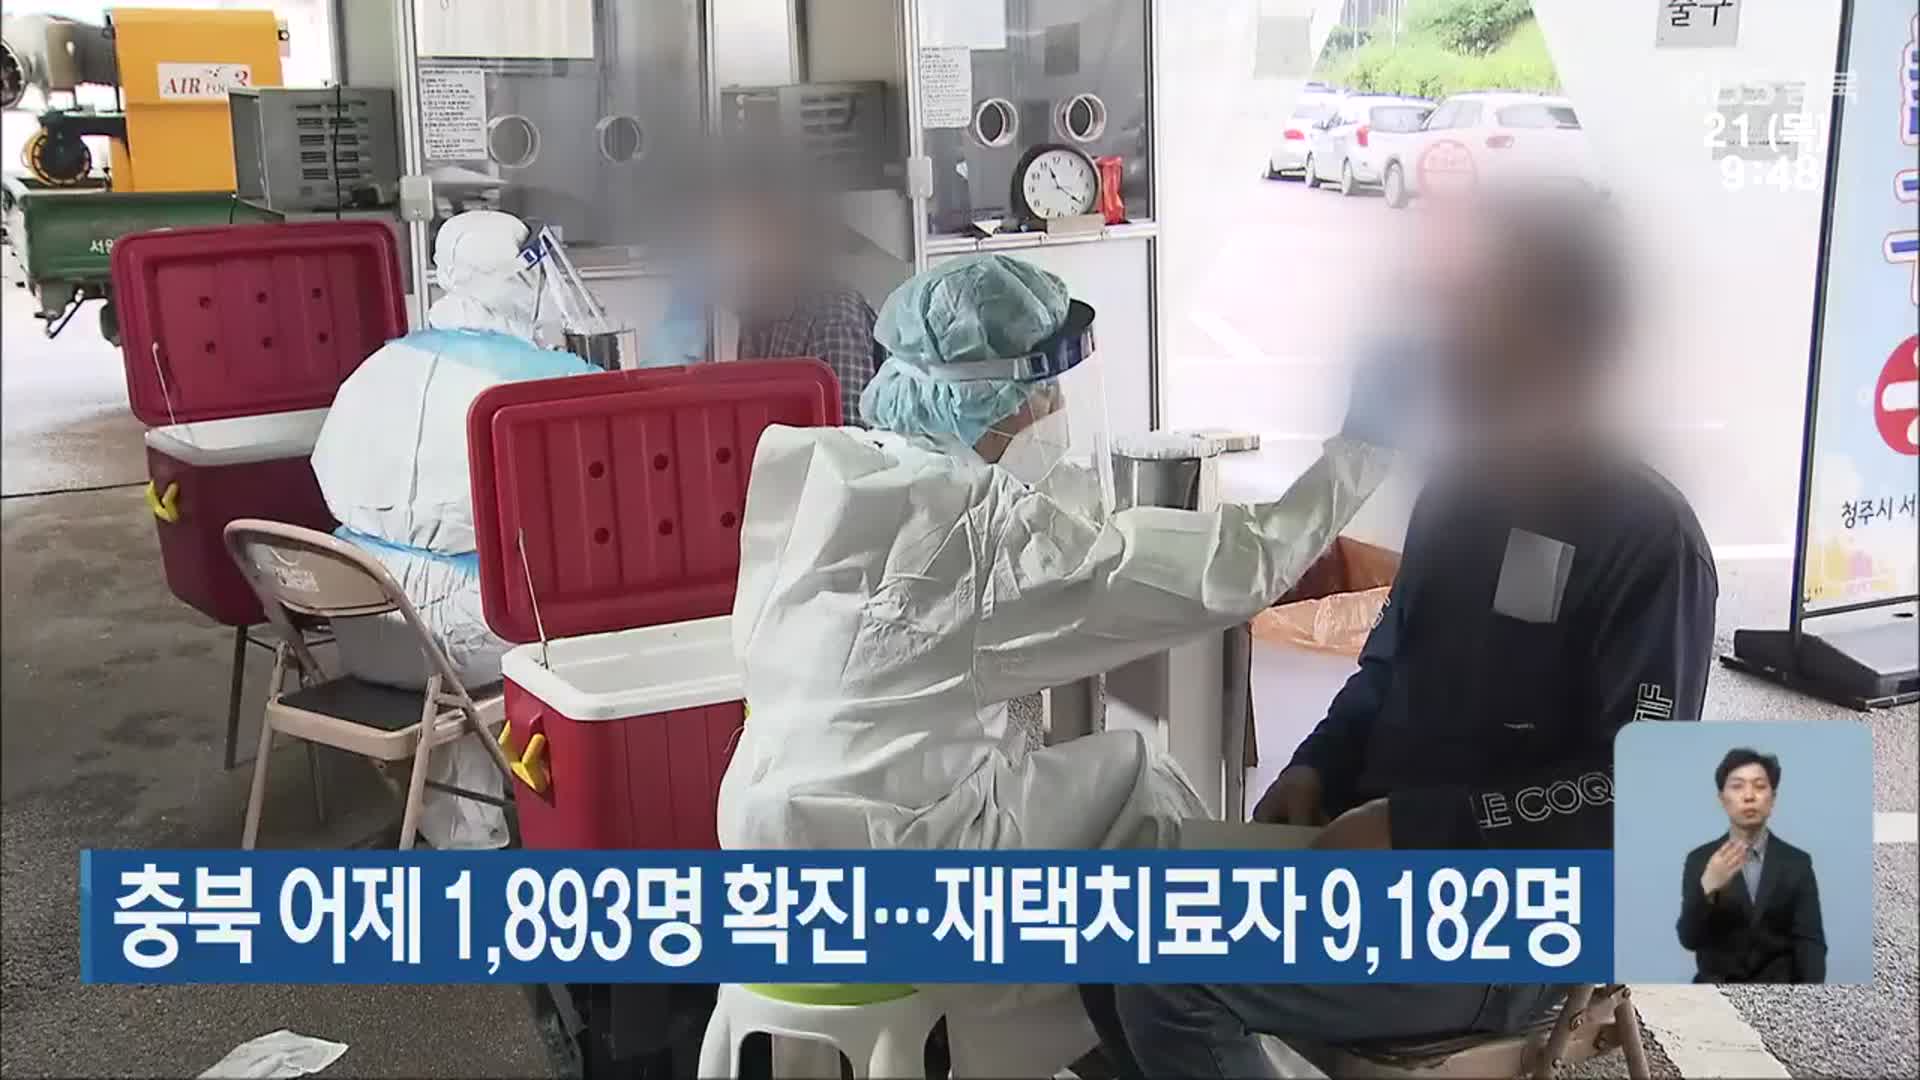 충북 어제 1,893명 확진…재택치료자 9,182명